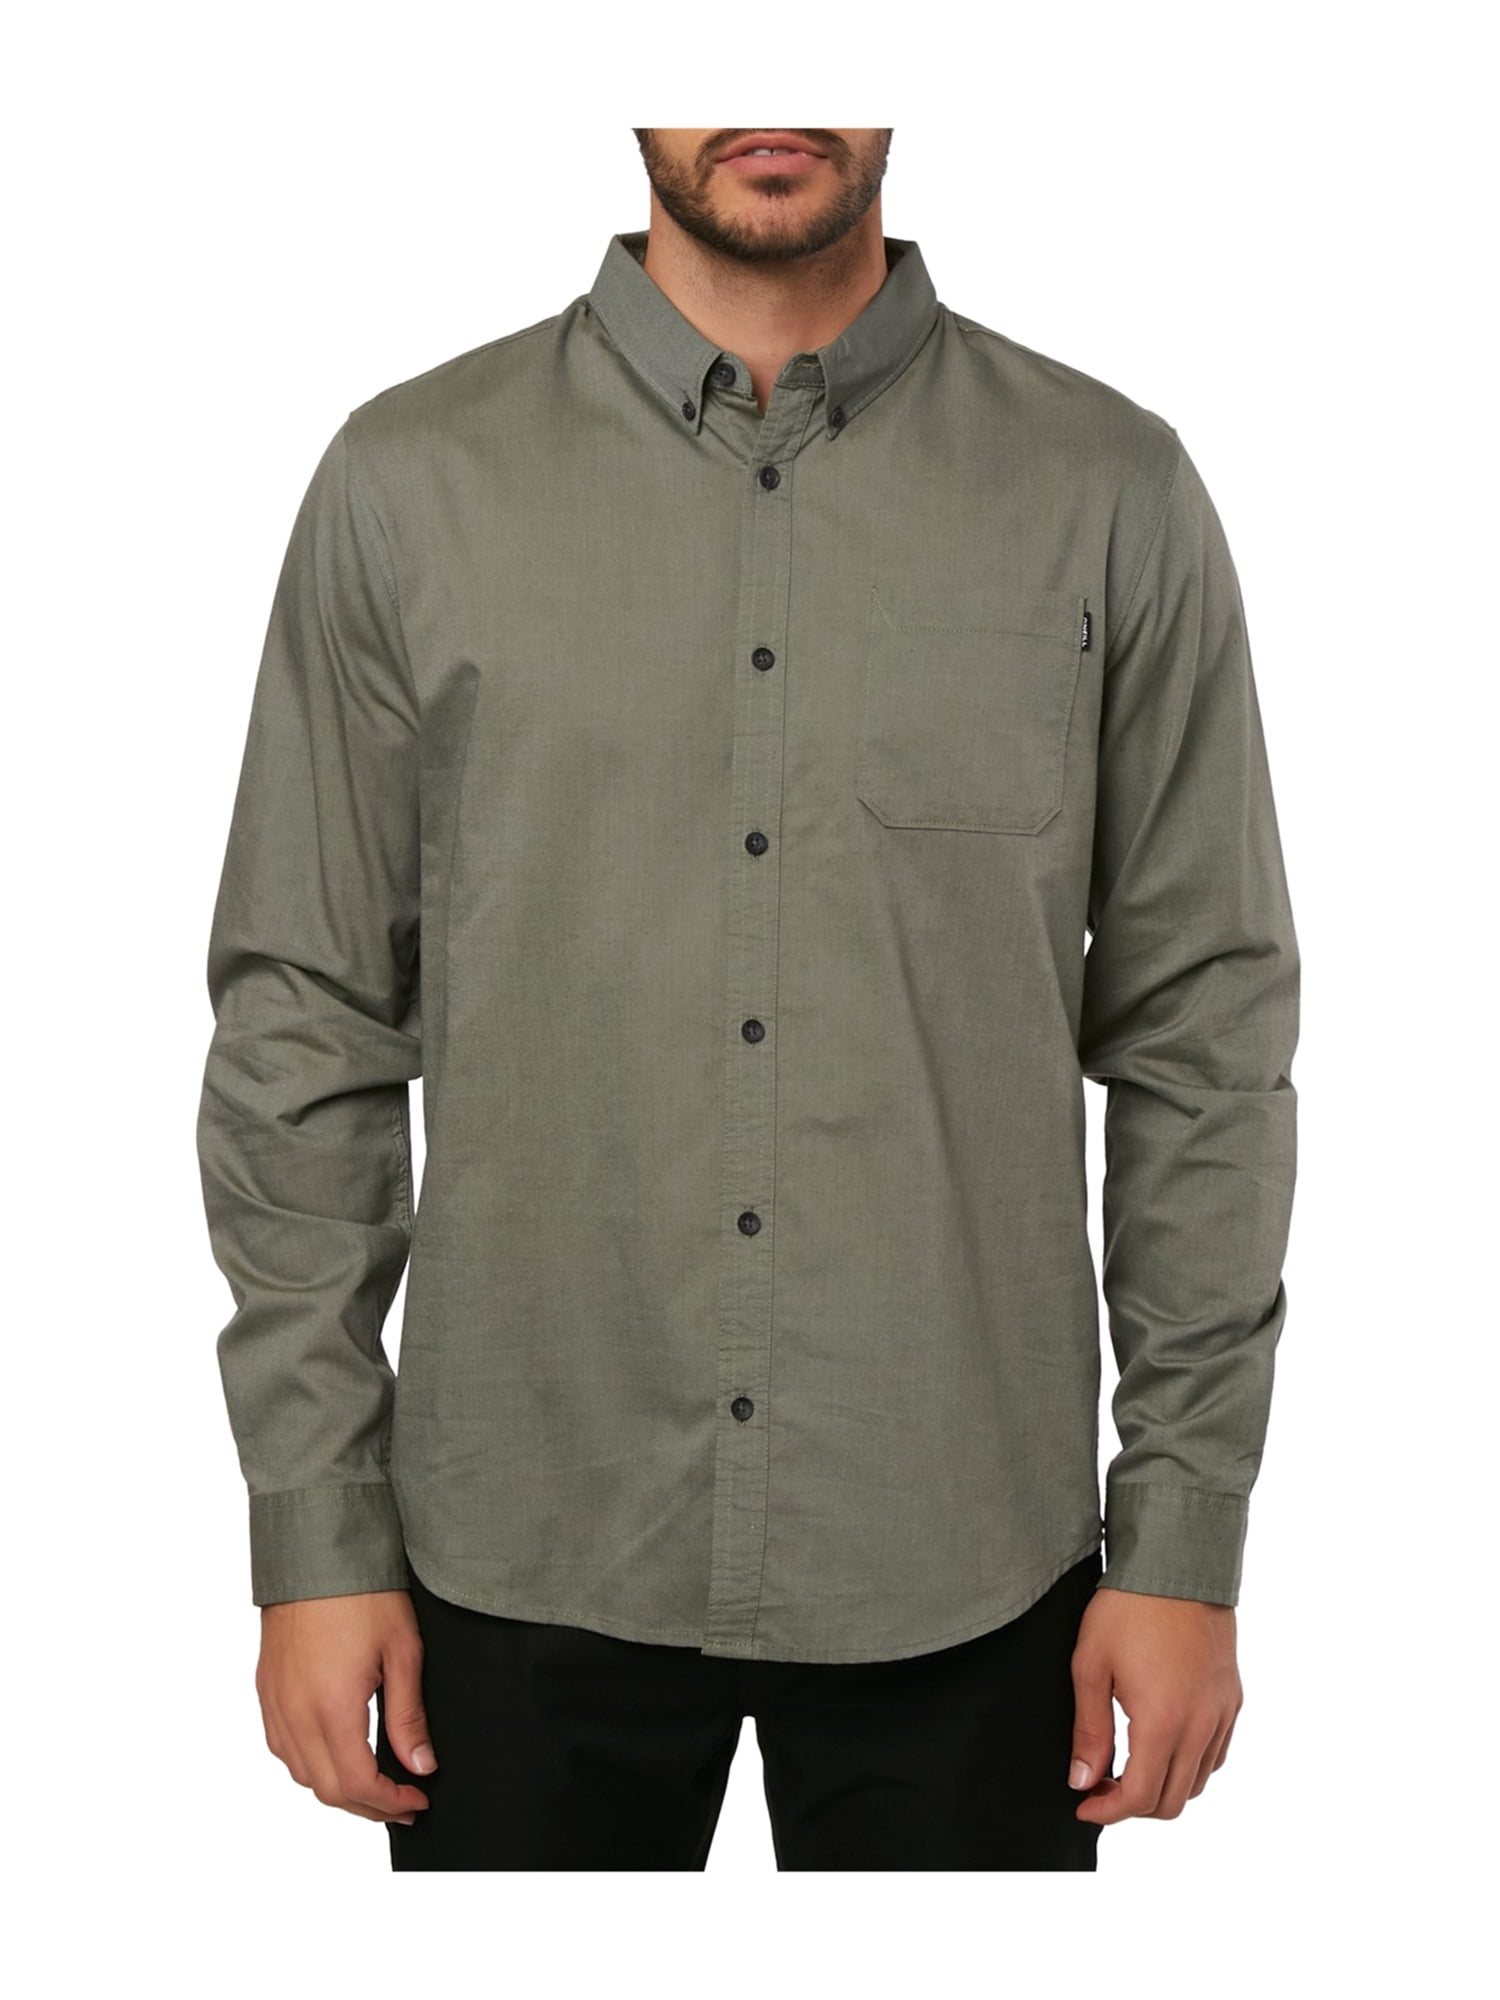 O'Neill Mens Solid Button Up Shirt green 2XL | Walmart Canada